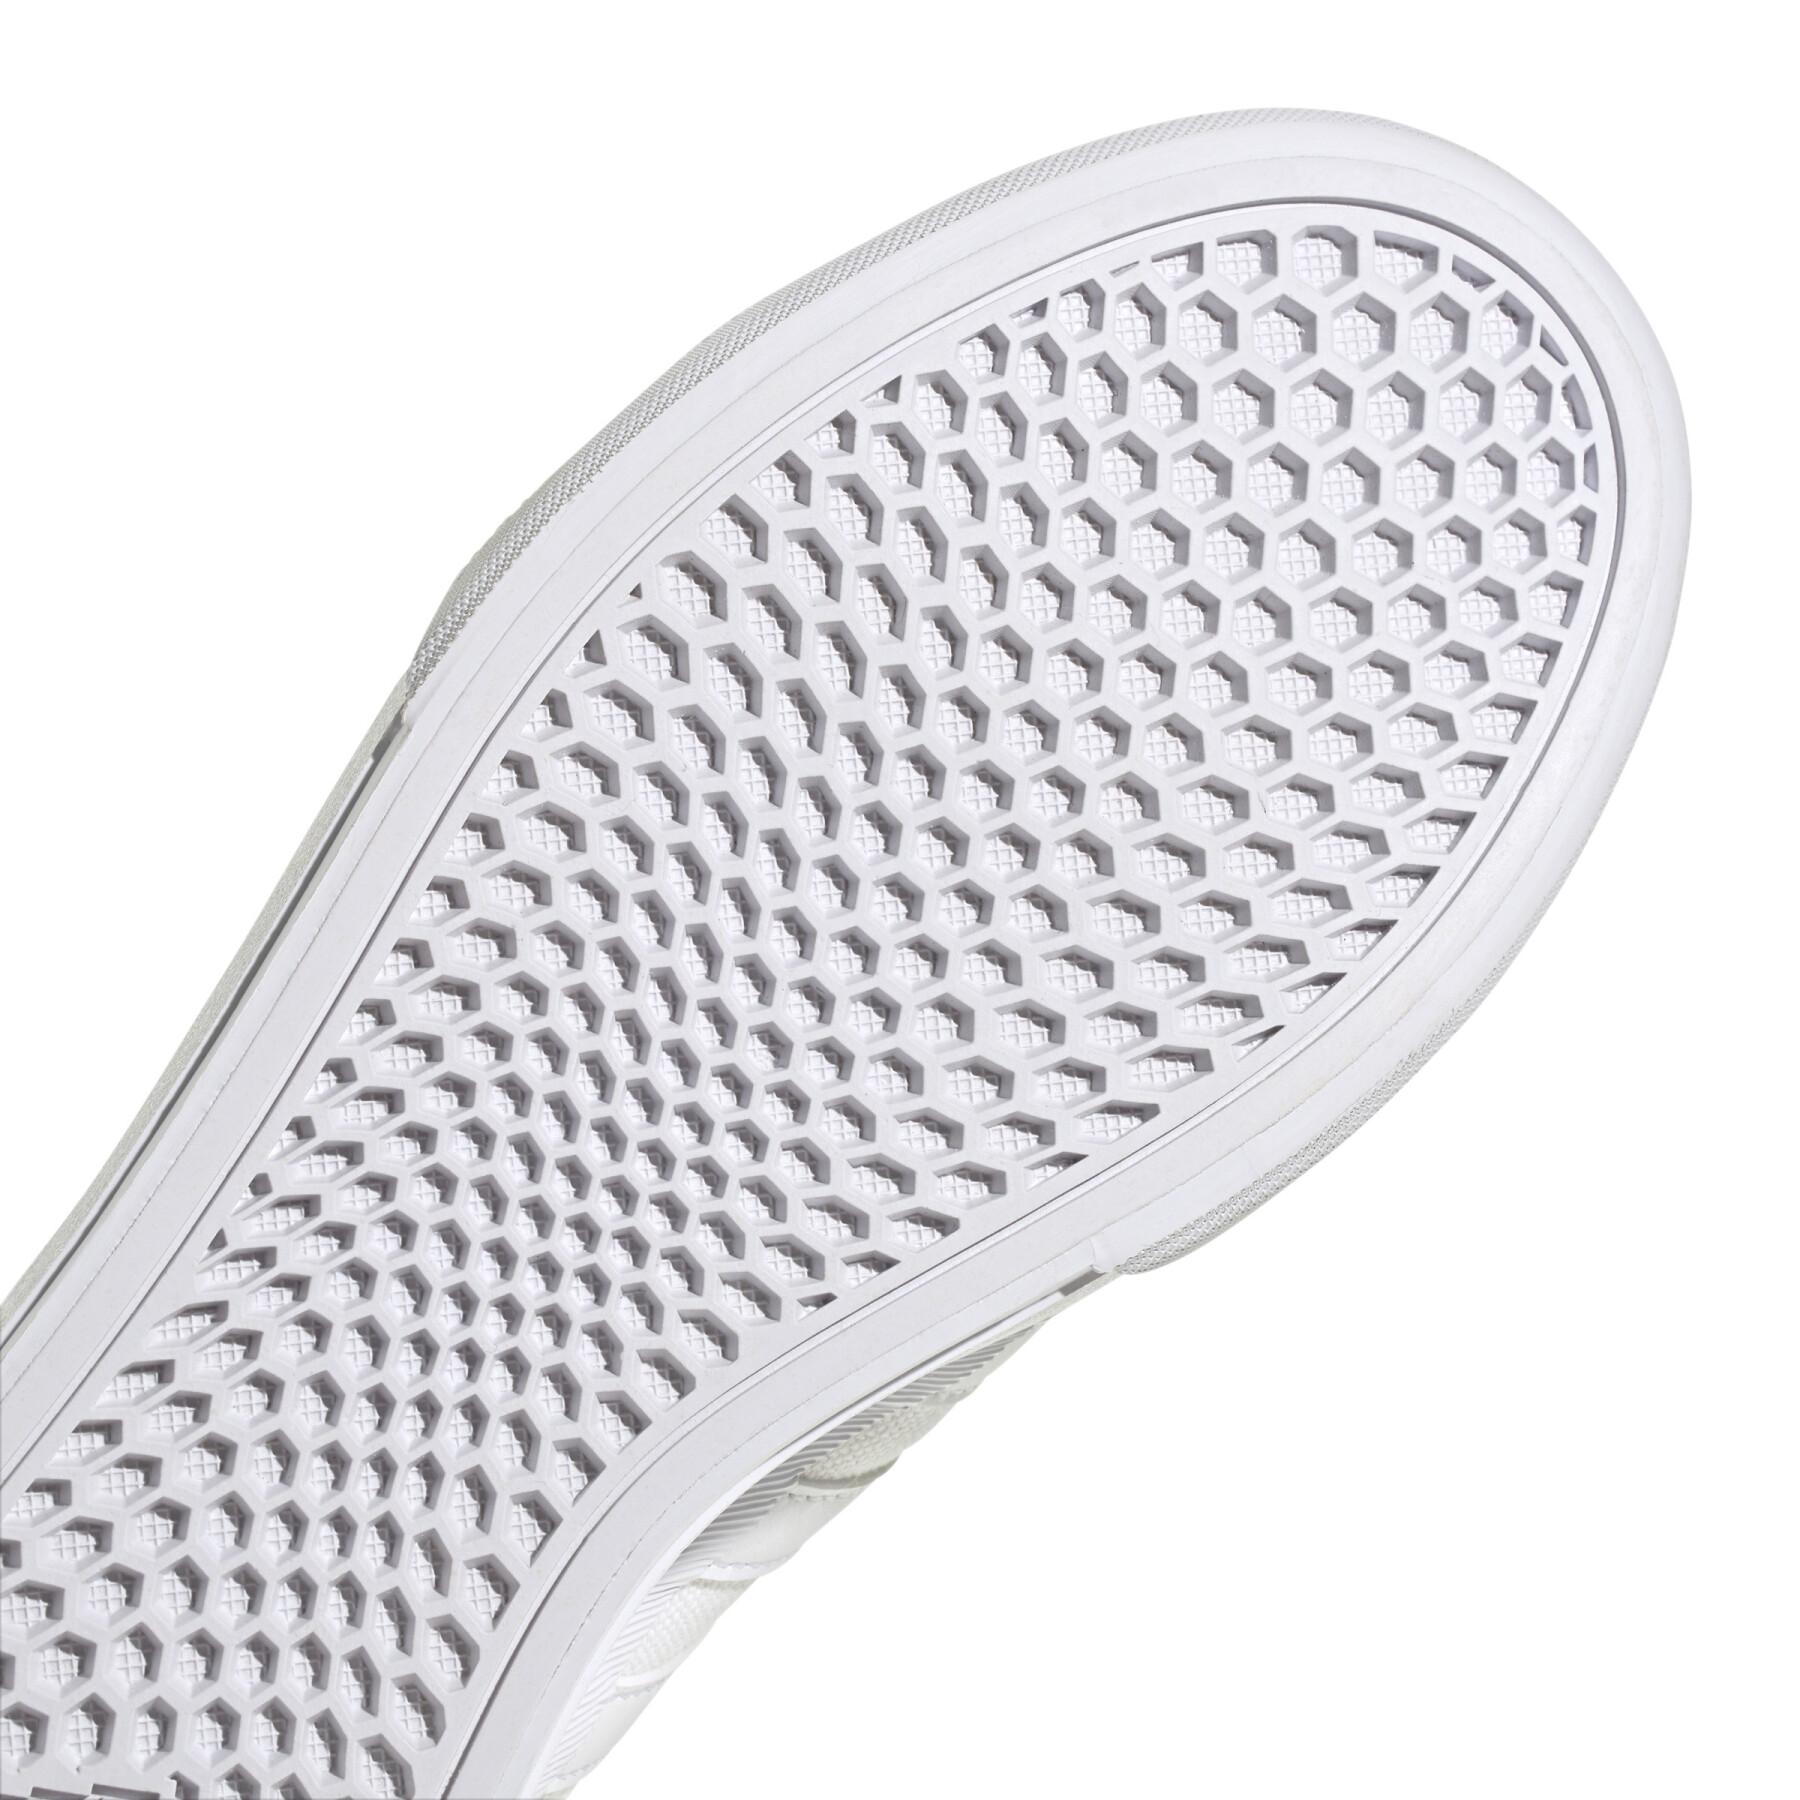 Zapatillas de deporte para mujer adidas Bravada 2.0 Platform